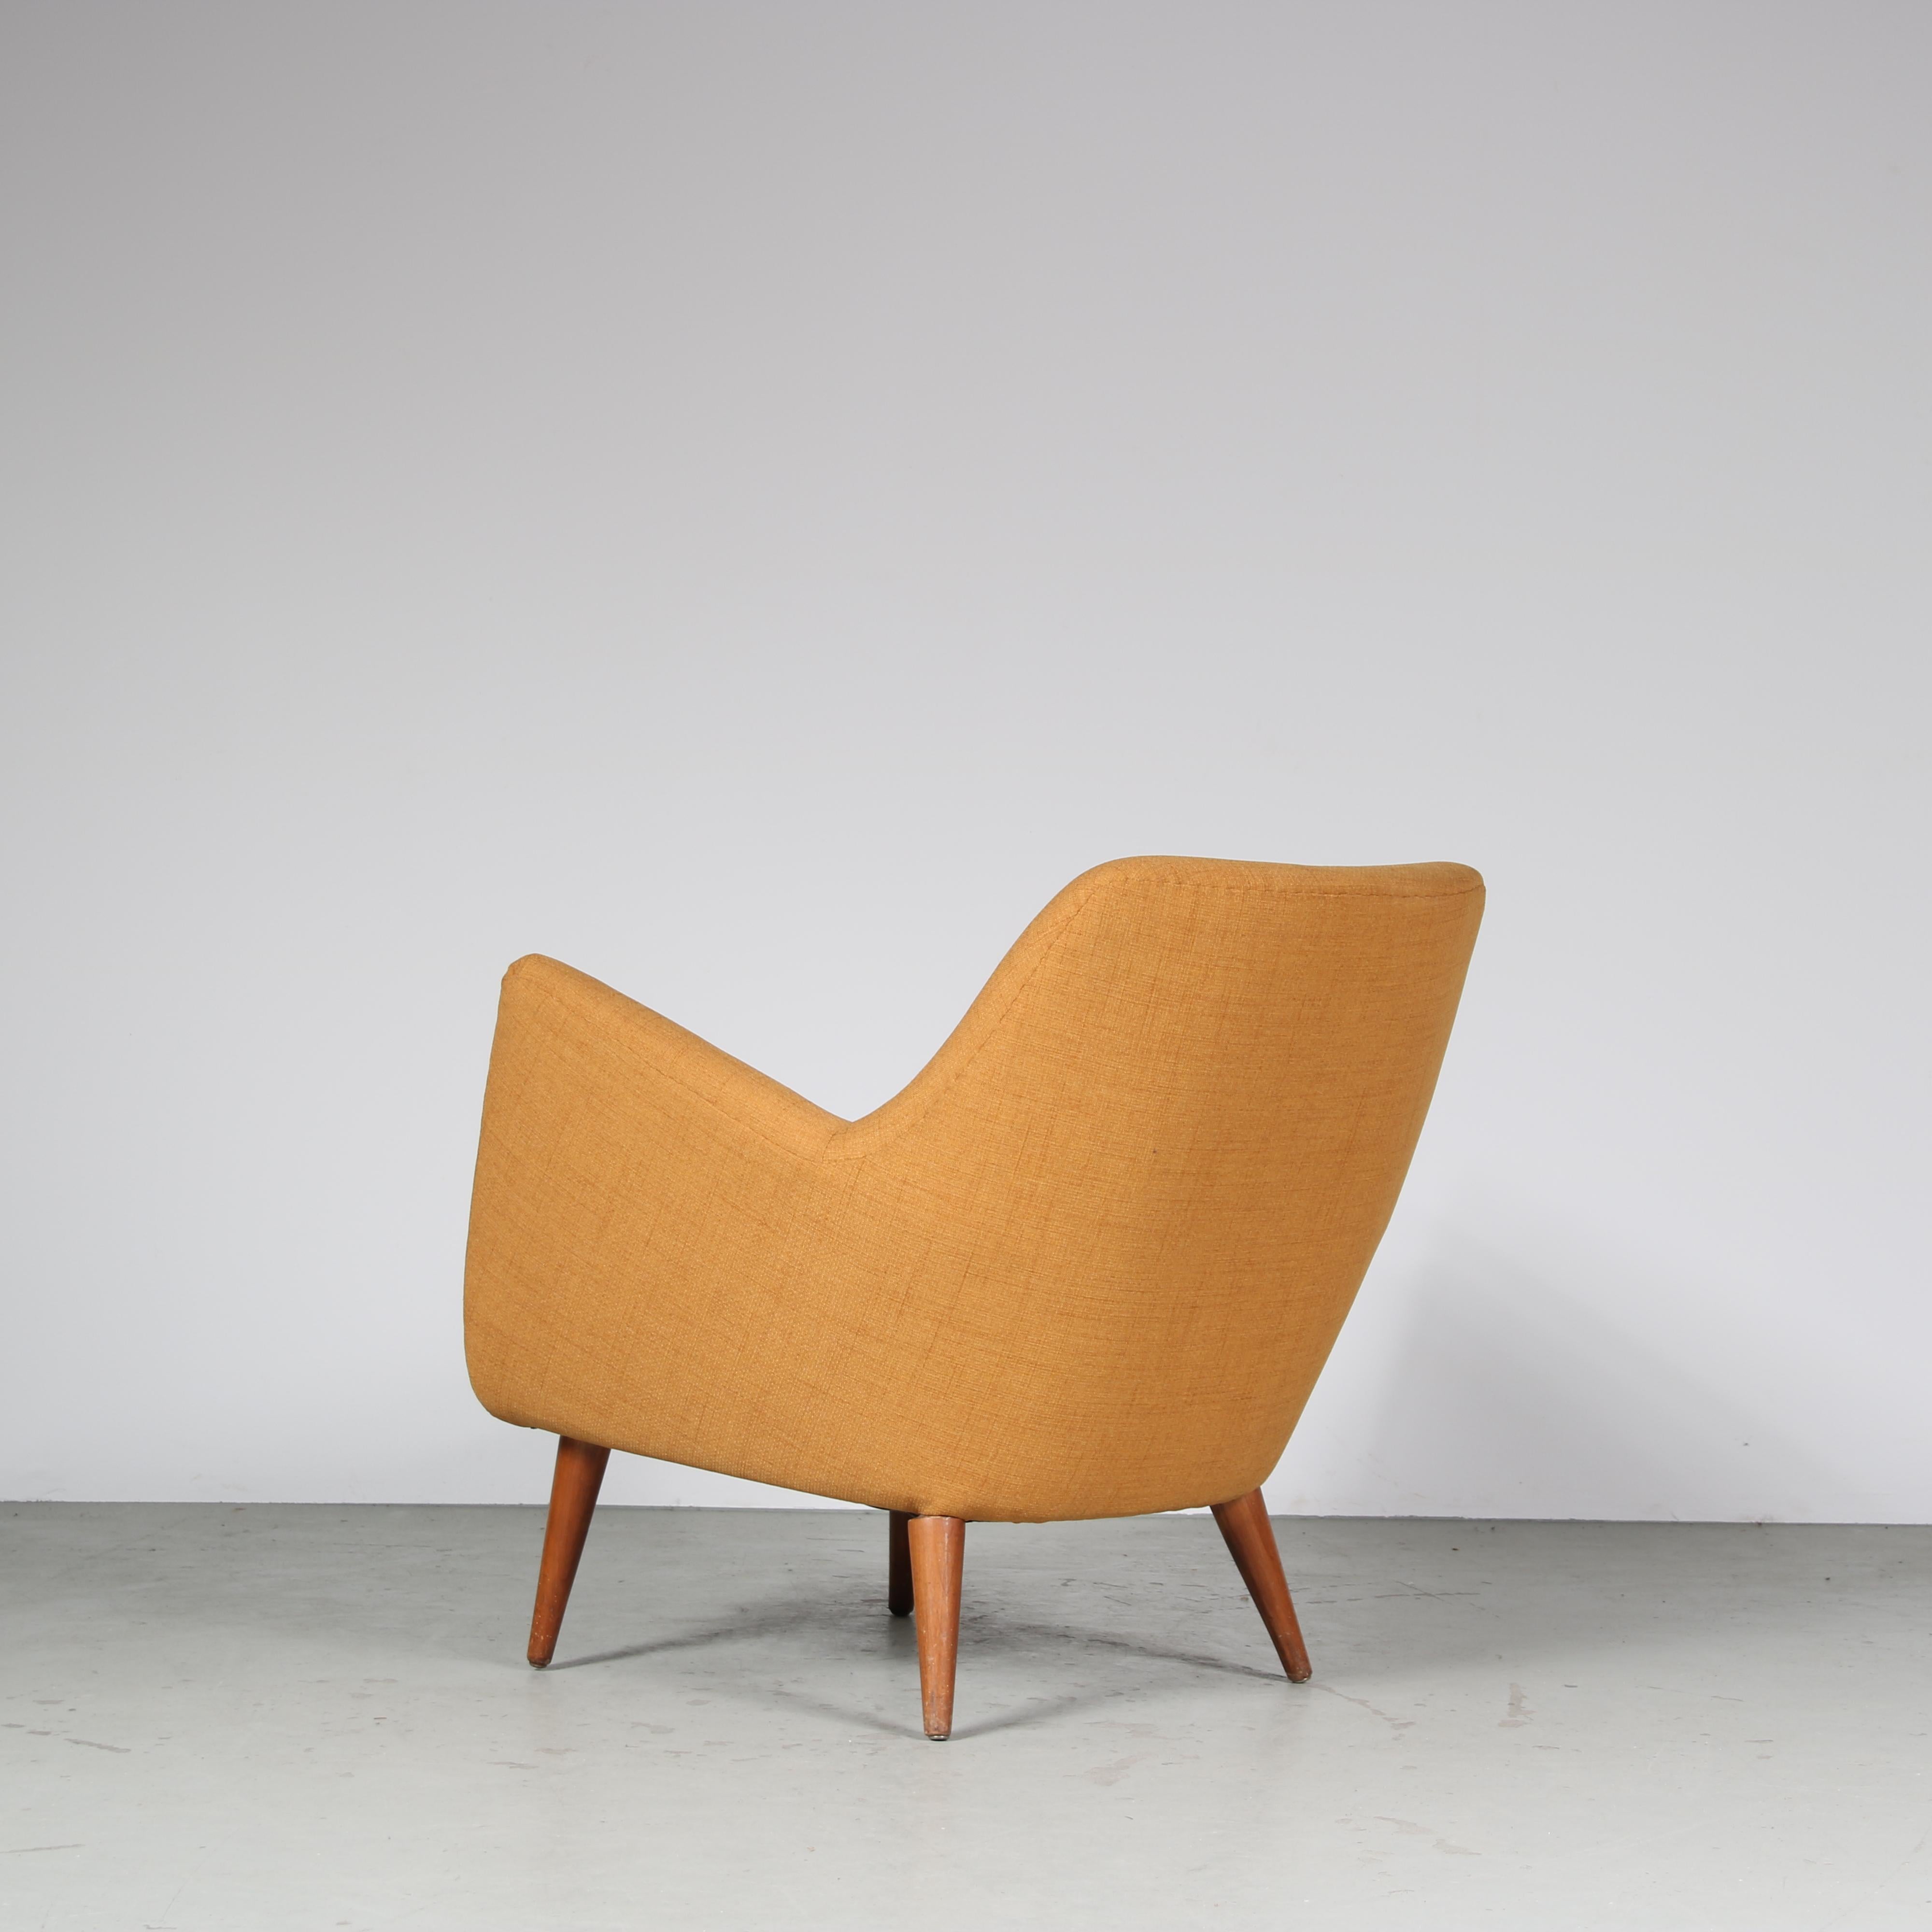 Mid-20th Century “Poet” Chair by Finn Juhl for Niels Vodder in Denmark, 1950 For Sale